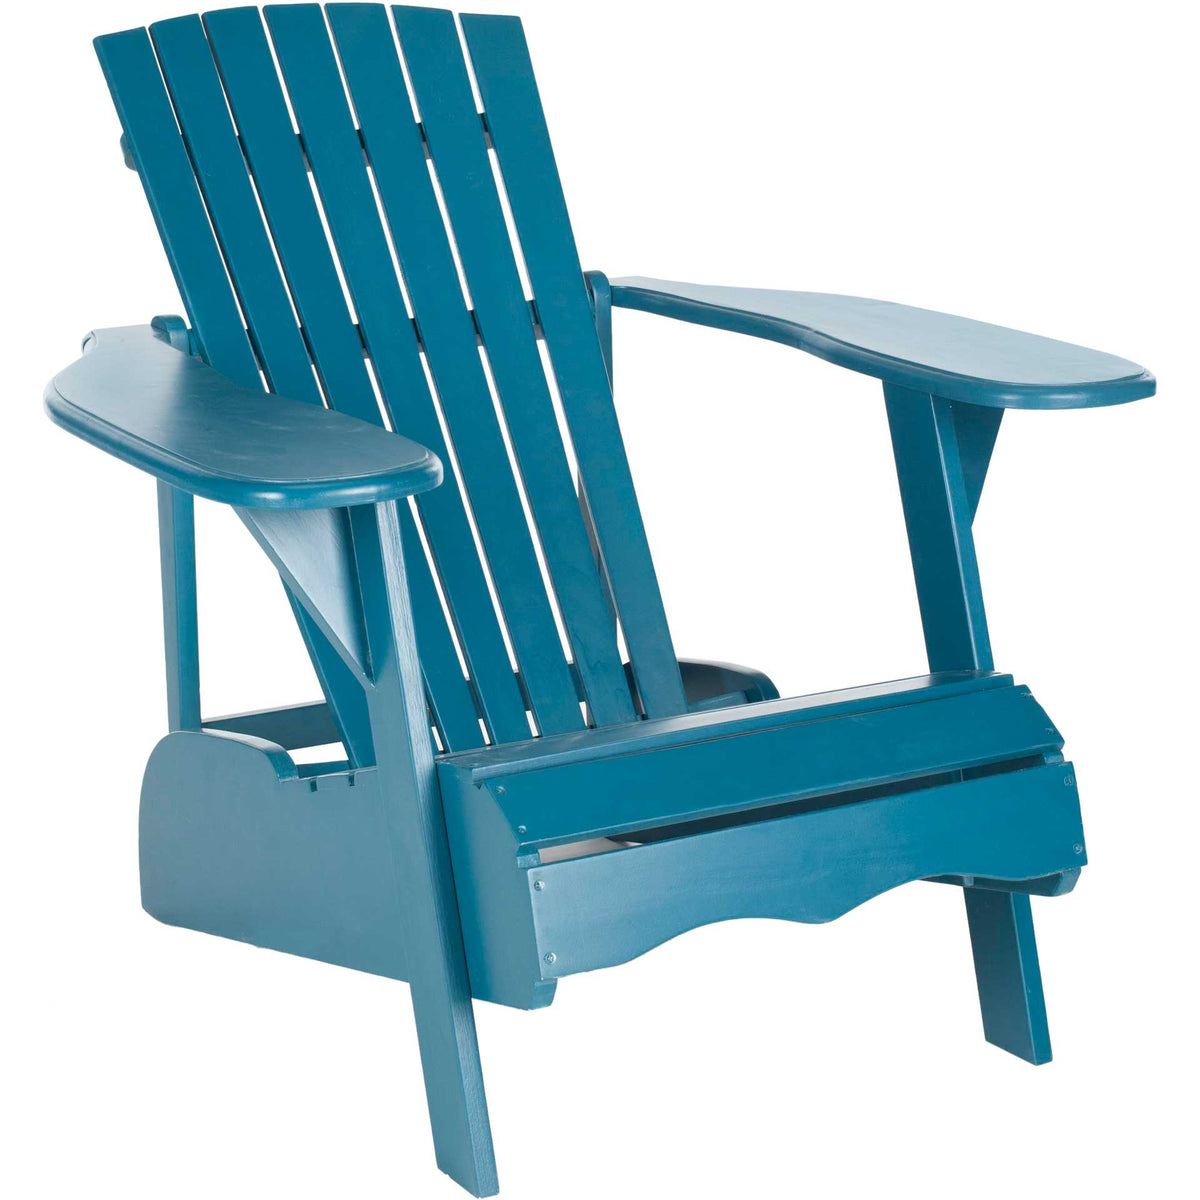 Montrelle Acacia Chair Teal